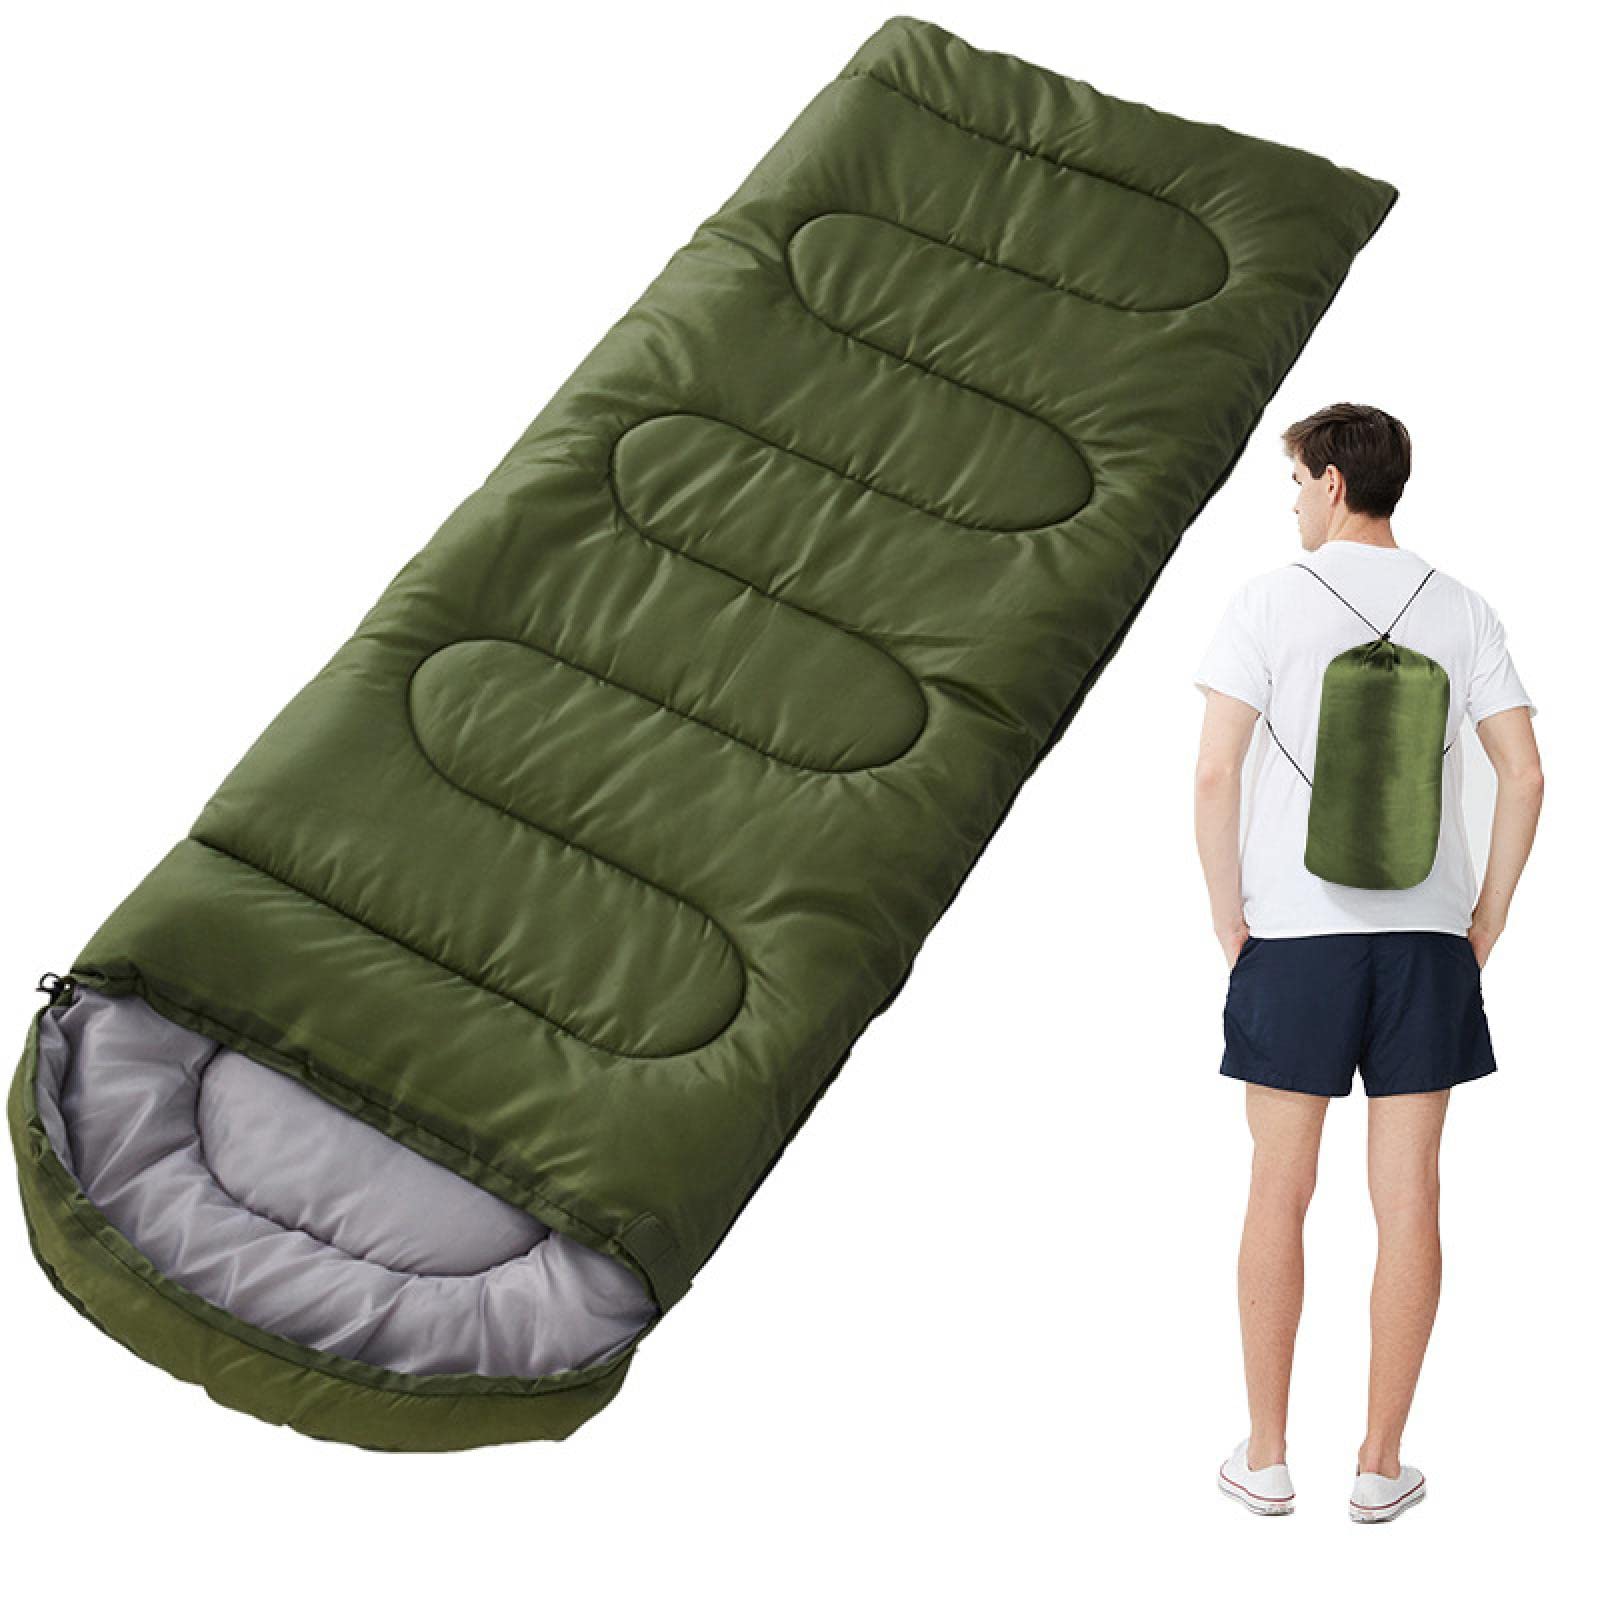 SZSS 寝袋 寝袋 超軽量 キャンプ 防水 寝袋 厚みのある 冬 暖かい 寝袋 大人 アウトドア キャンプ 寝袋 green1300g 